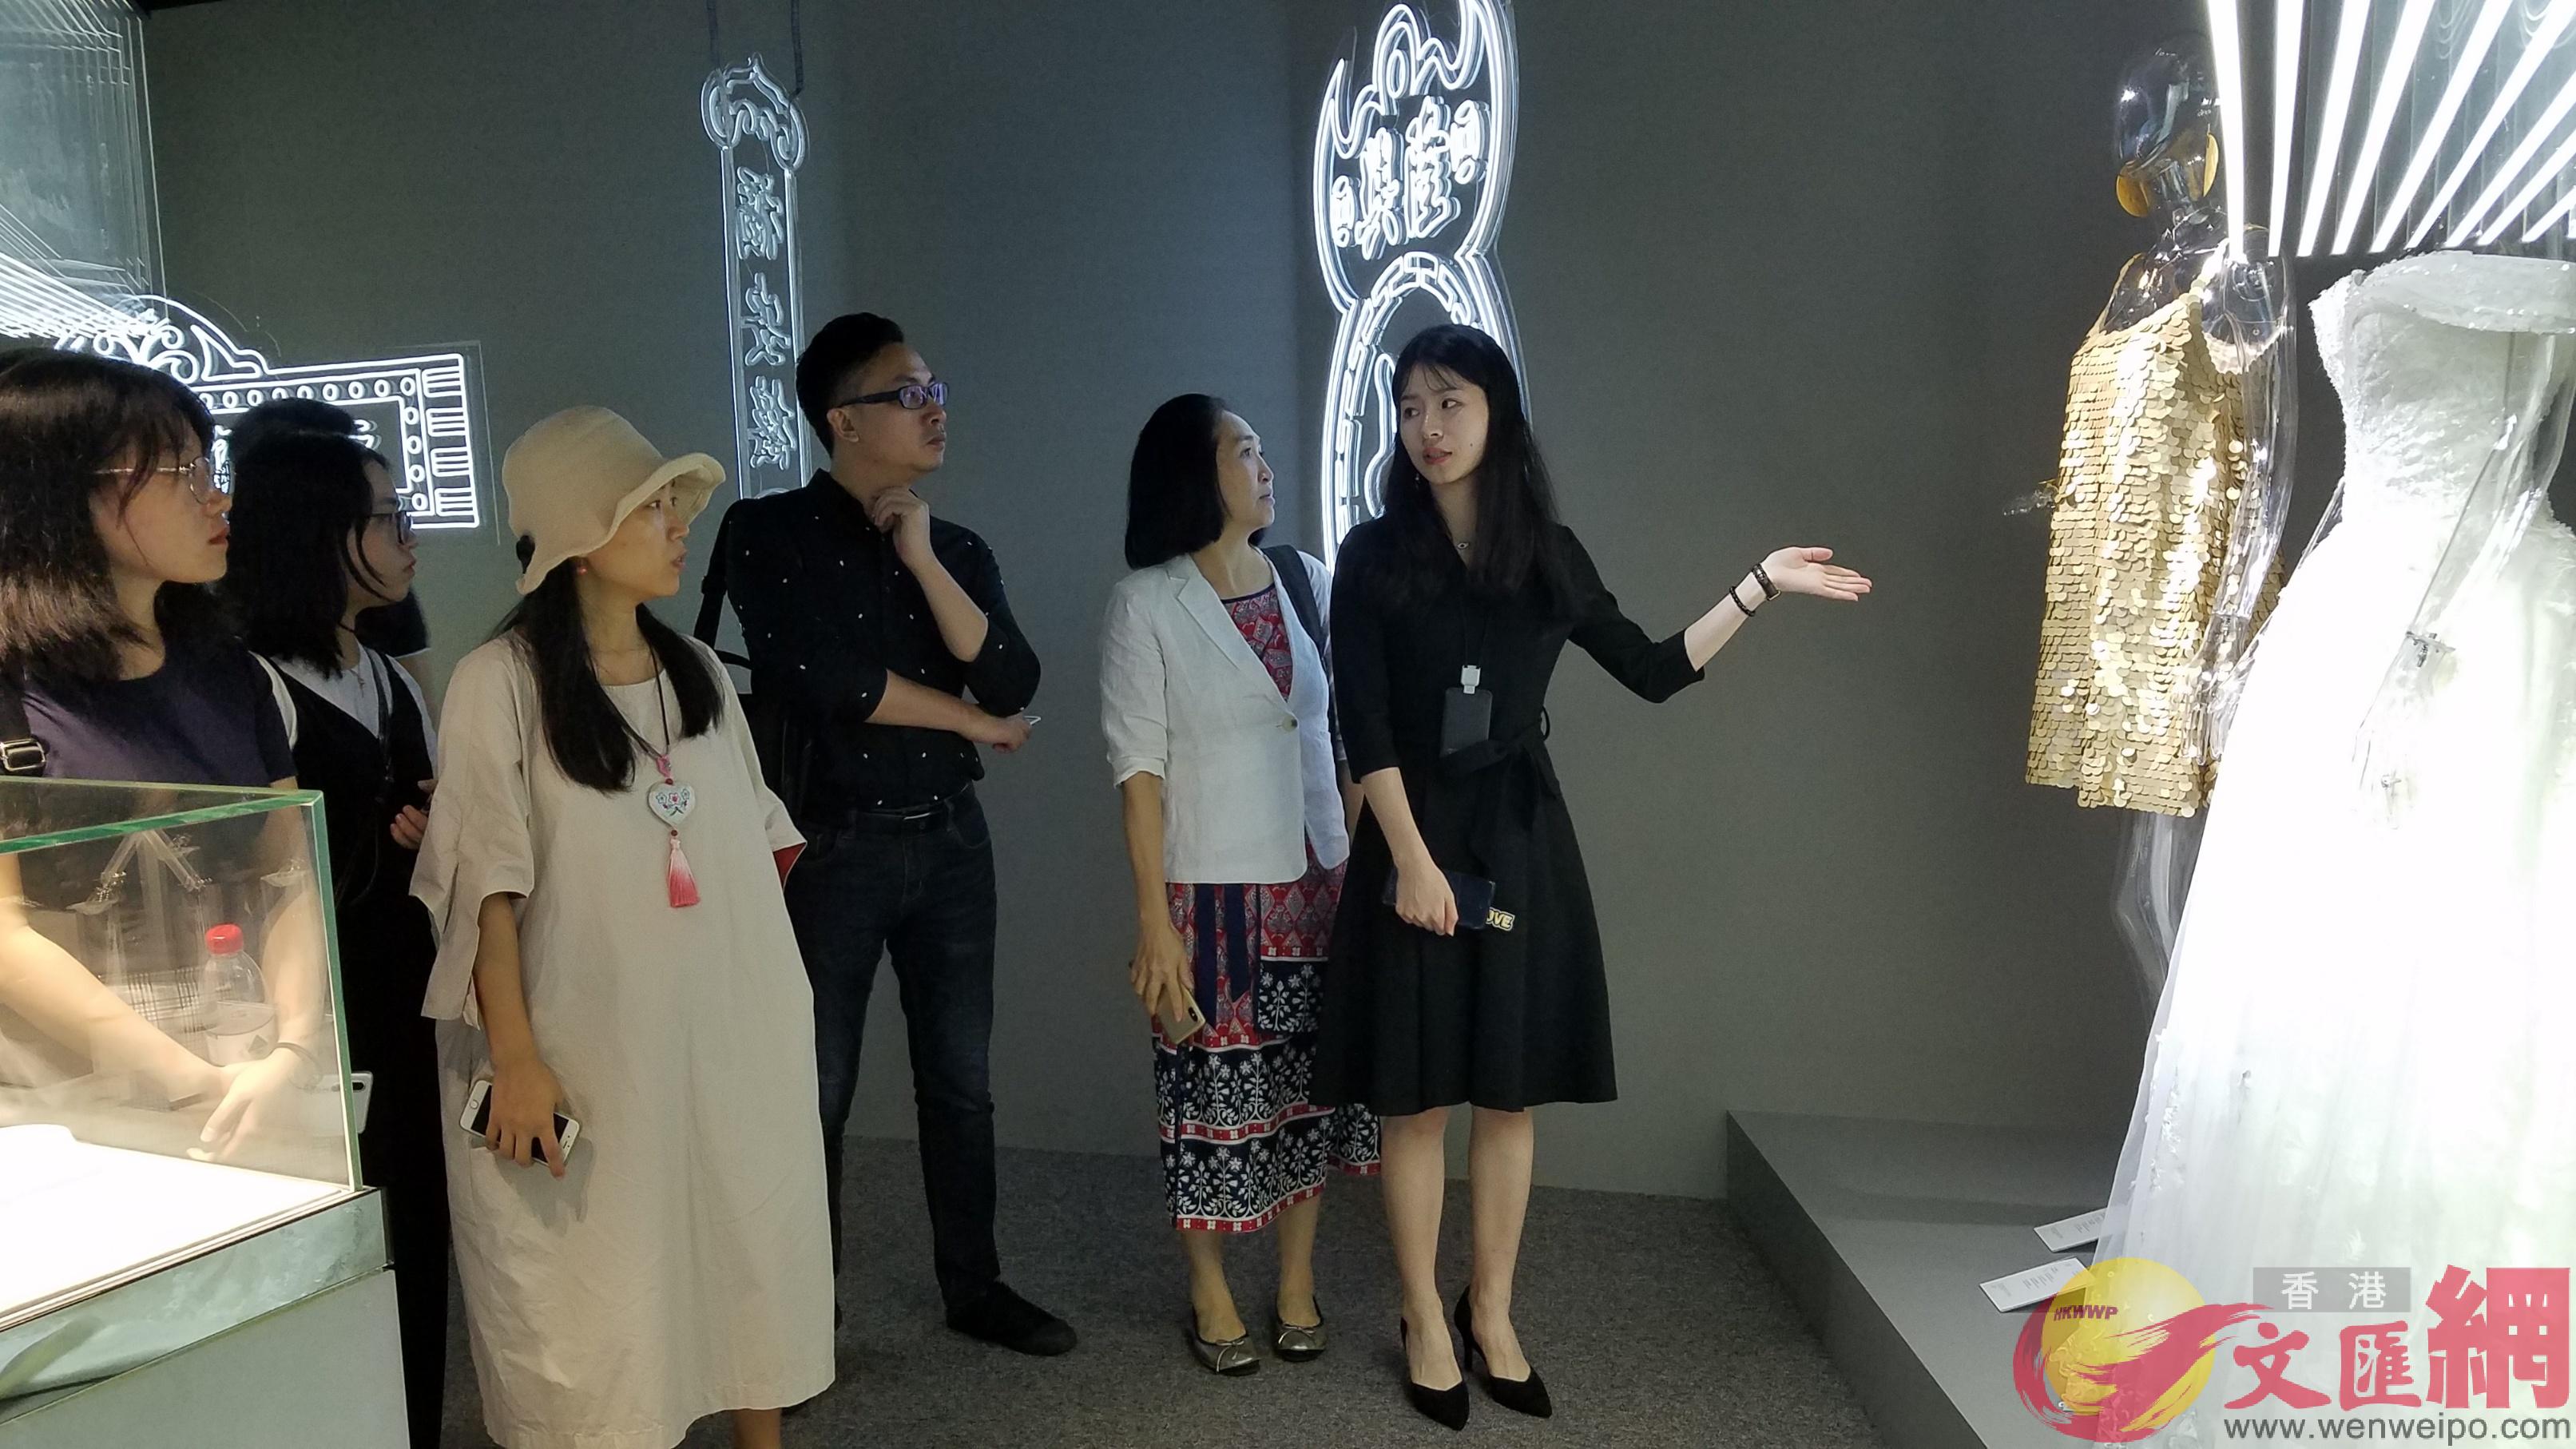 設計師們參觀周大福90周年品牌周年展覽 記者郭若溪攝